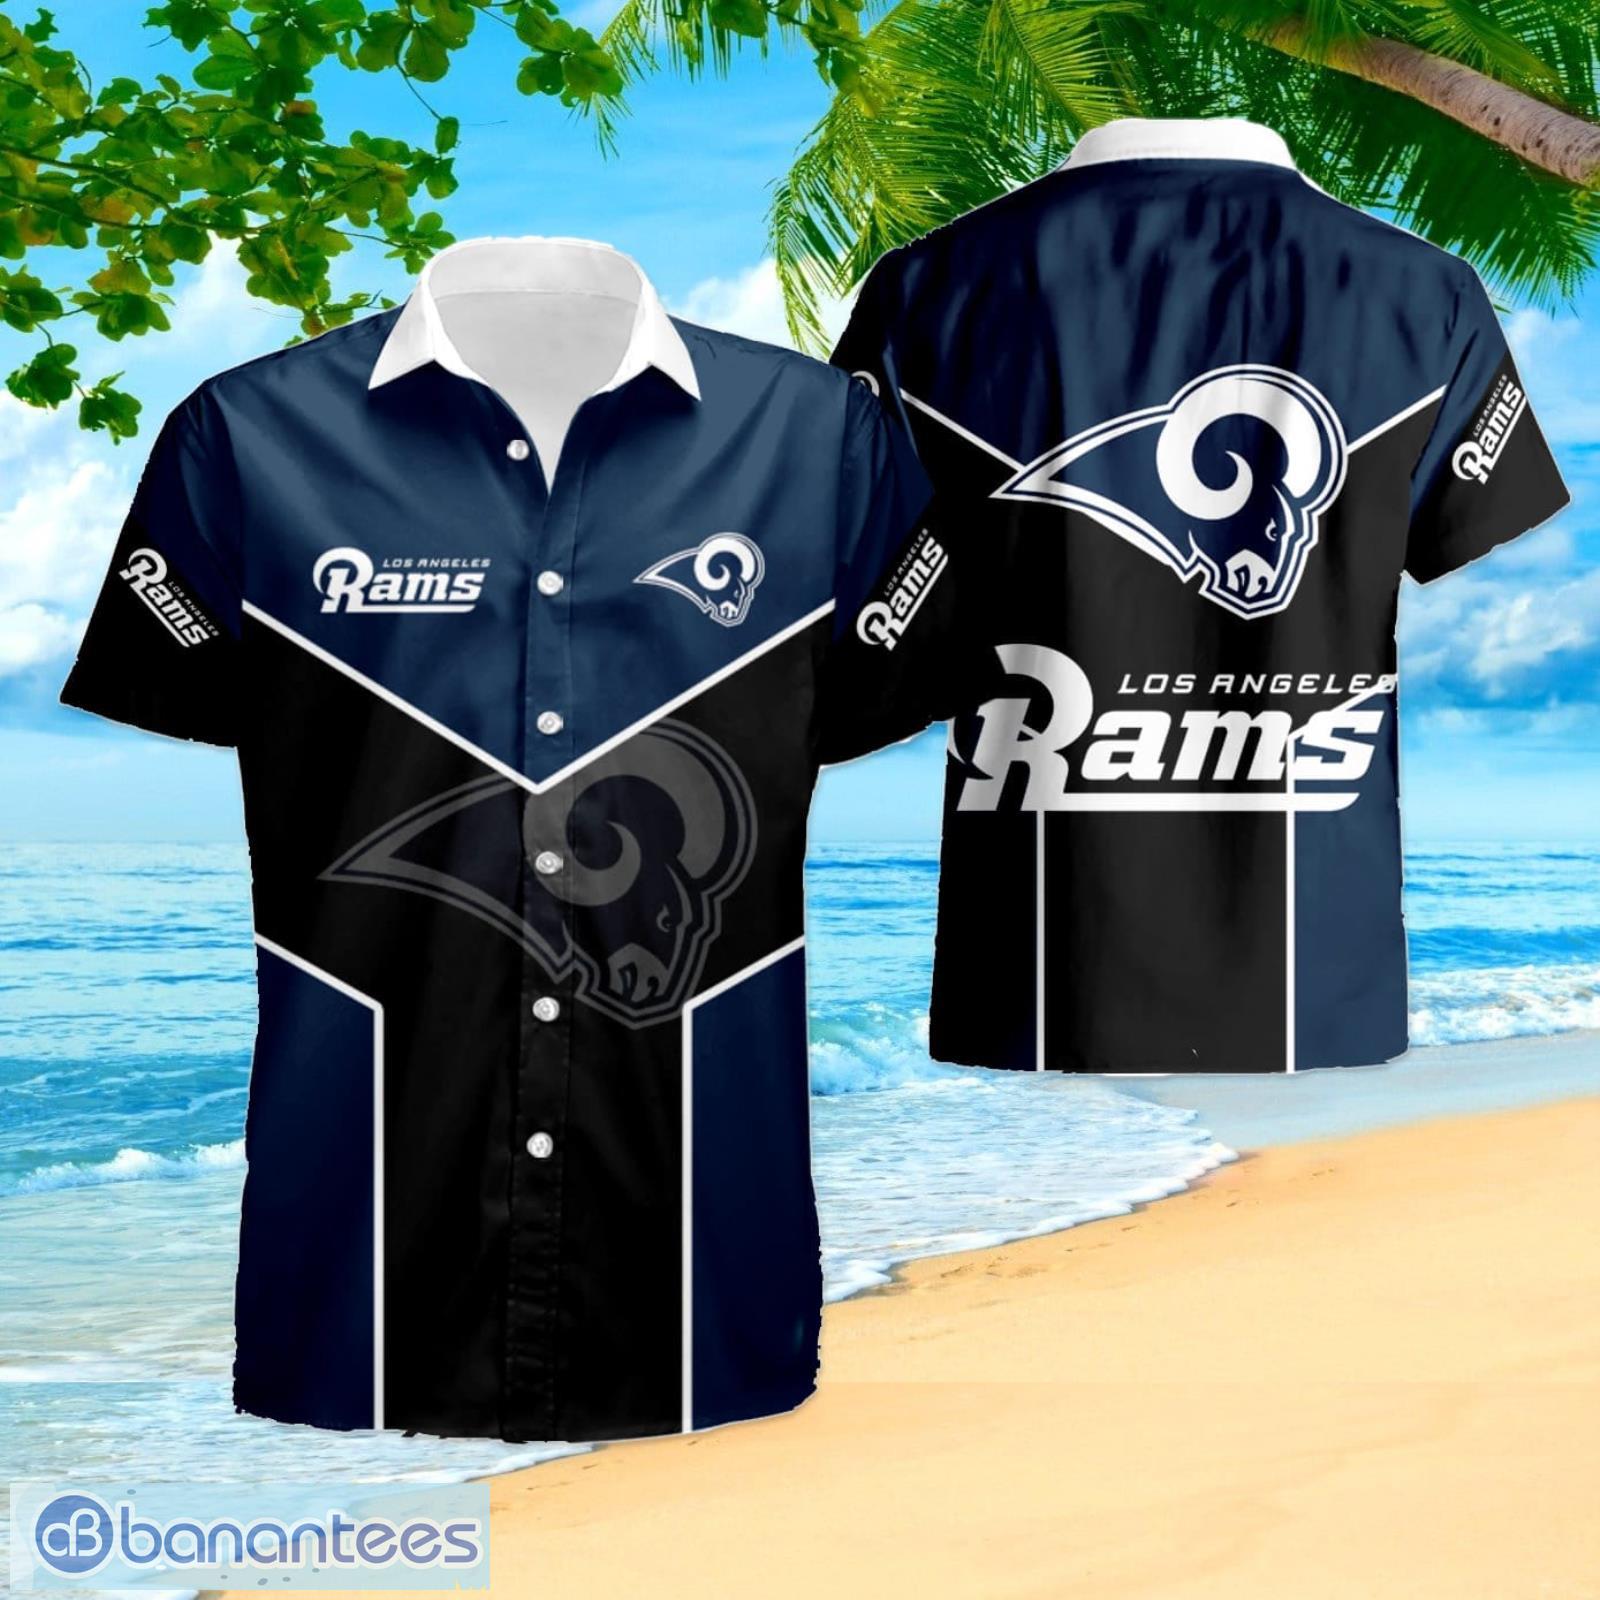 Los Angeles Rams 2 Summer Hawaiian Shirt And Shorts - Banantees